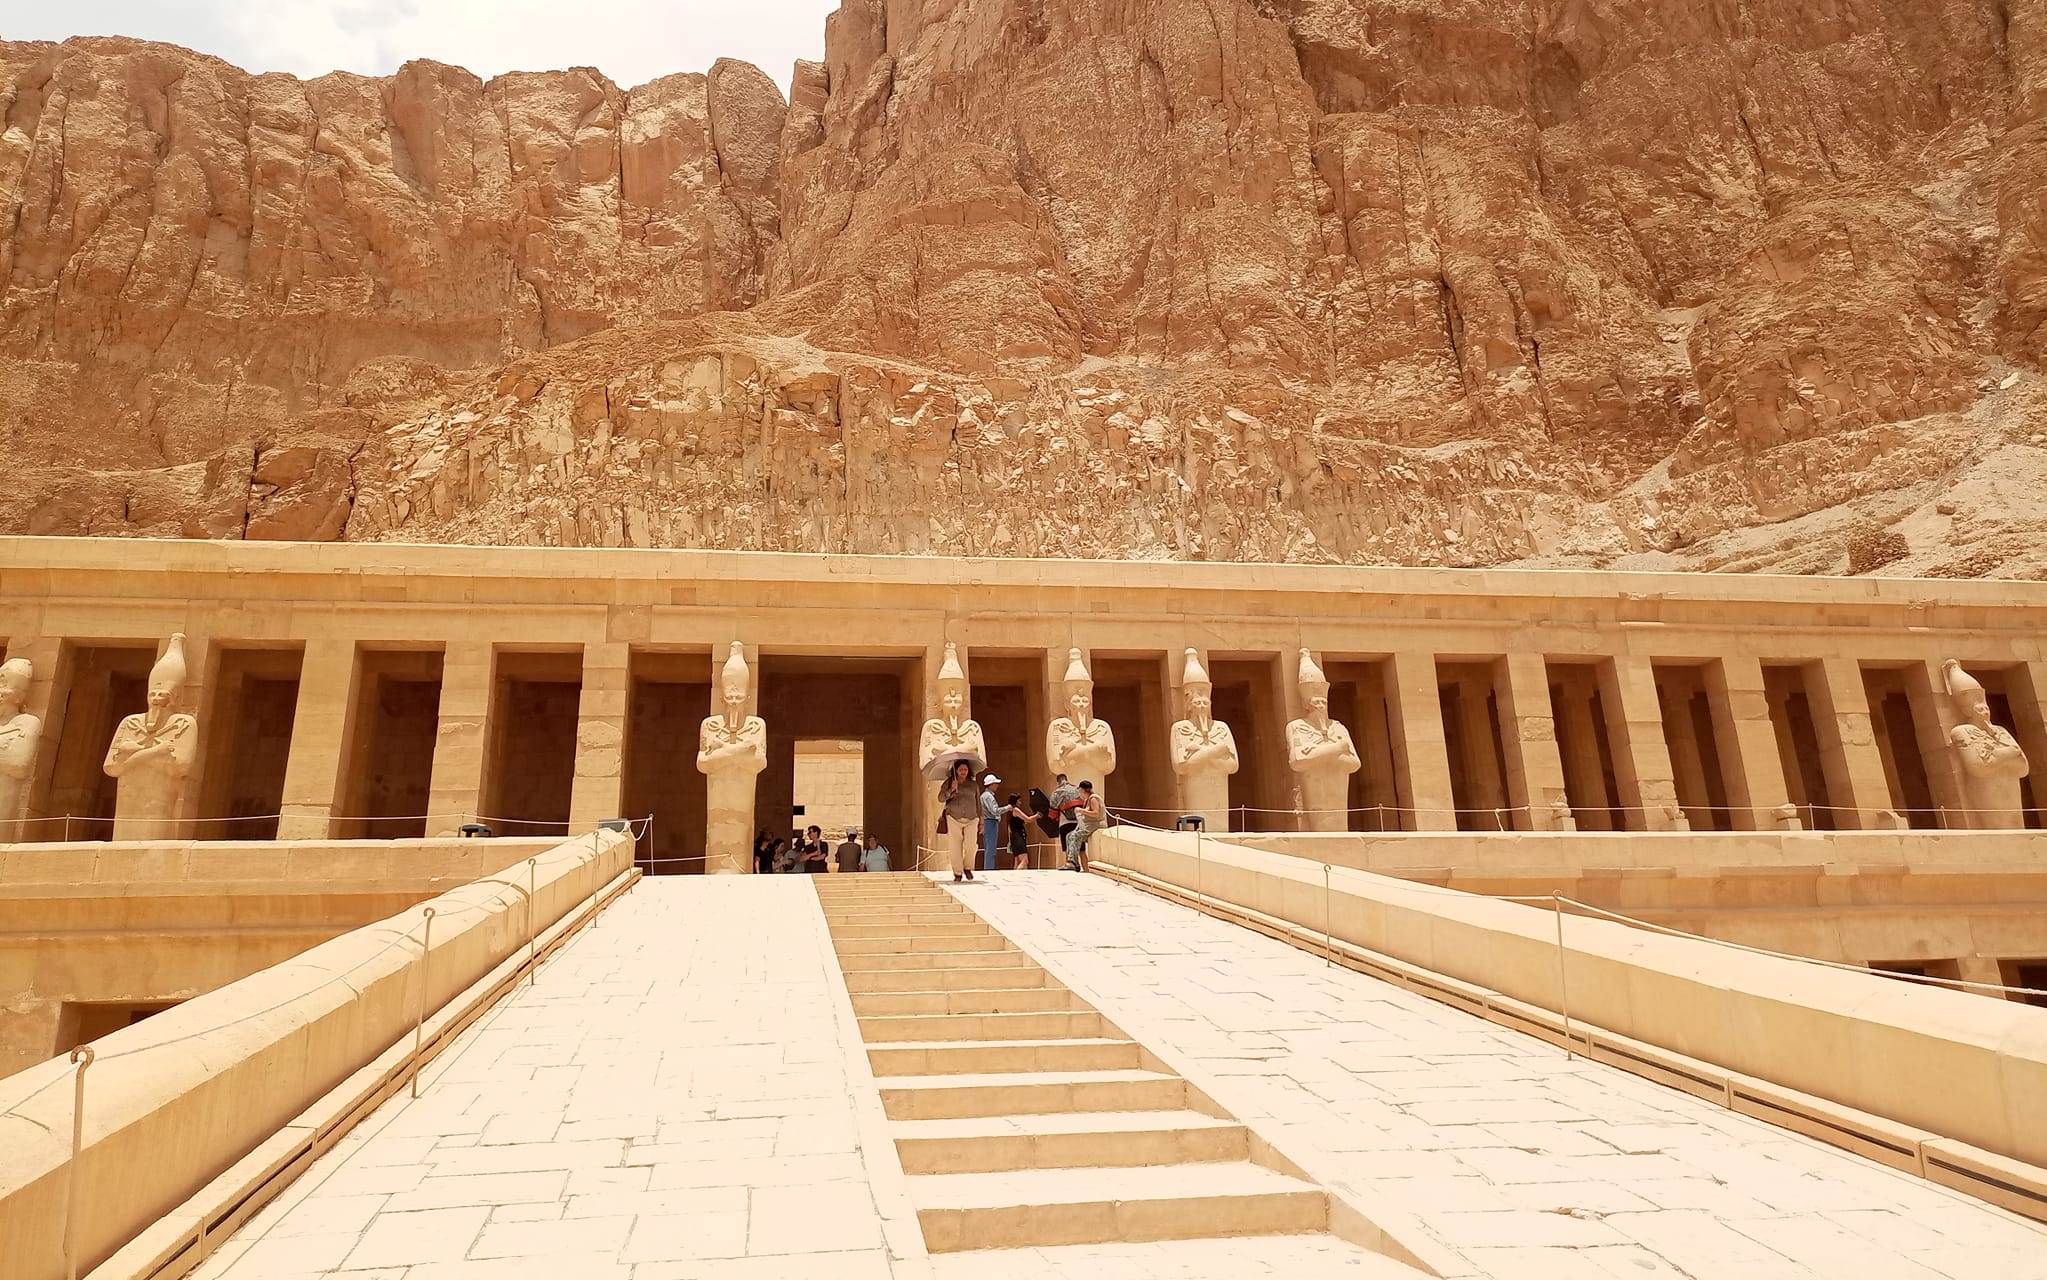 السياح يستمتعون بزيارة معبد الملكة حتشبسوت